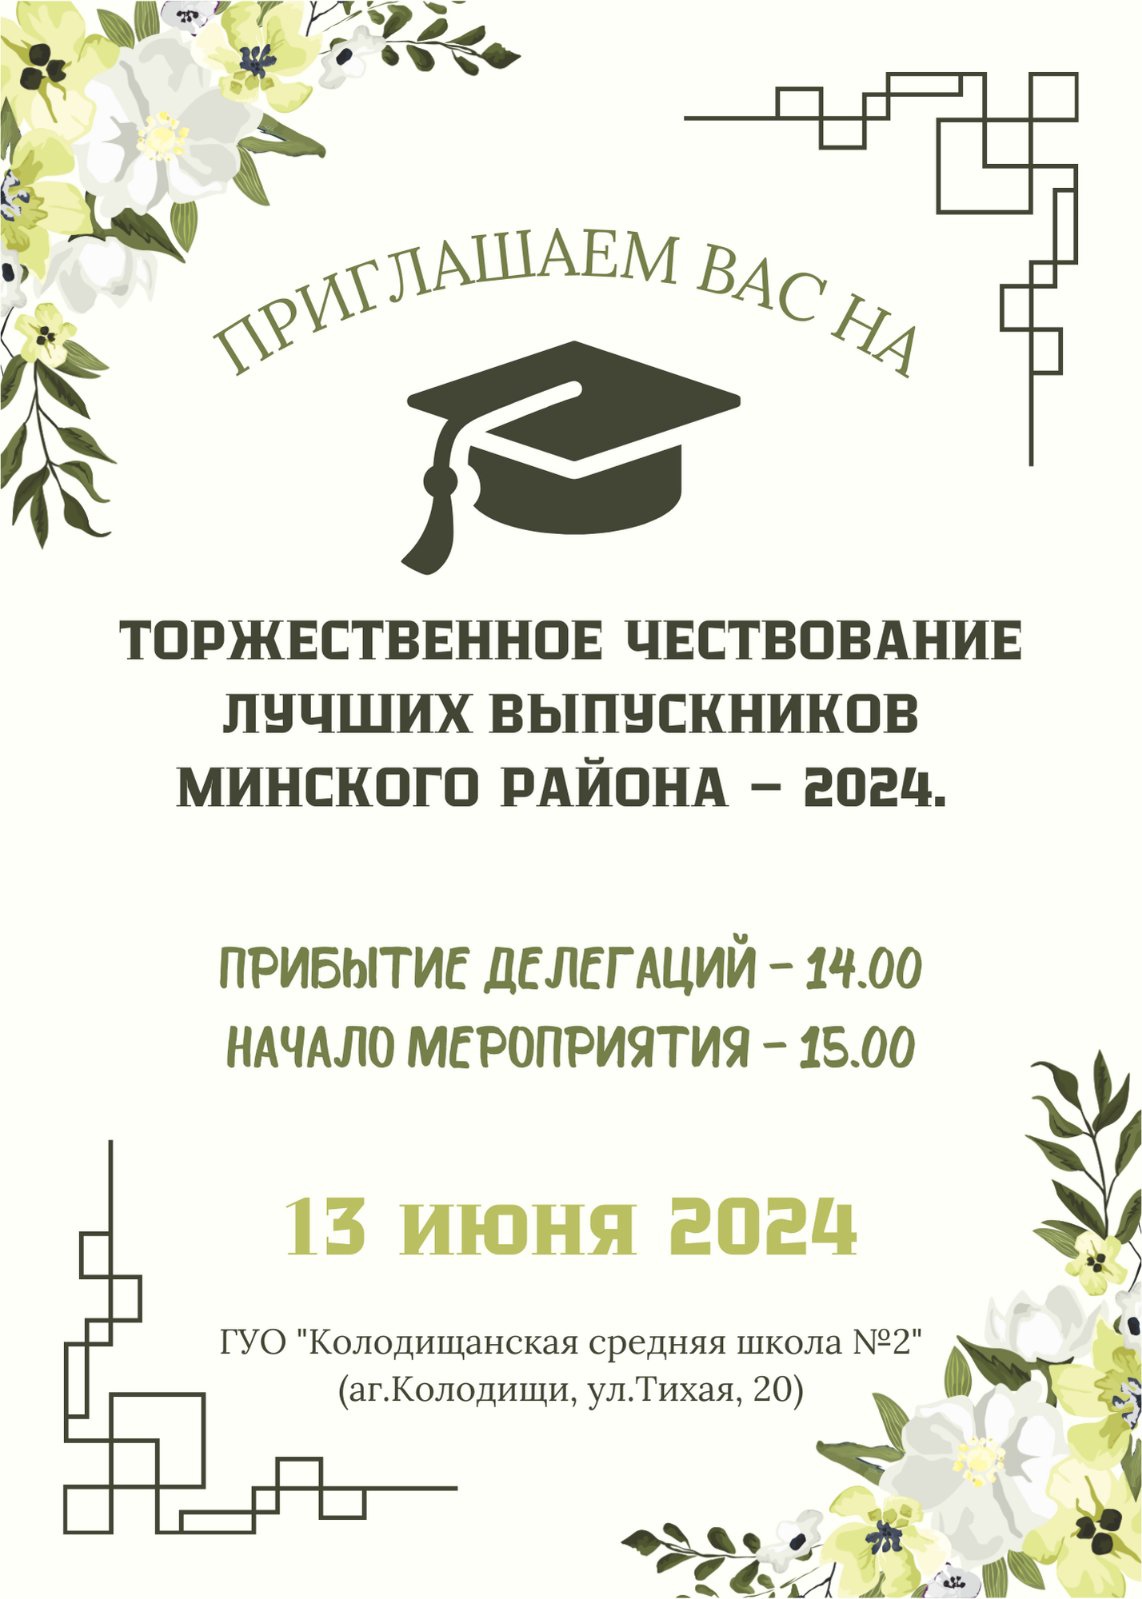 Торжественное чествование лучших выпускников Минского района - 2024 